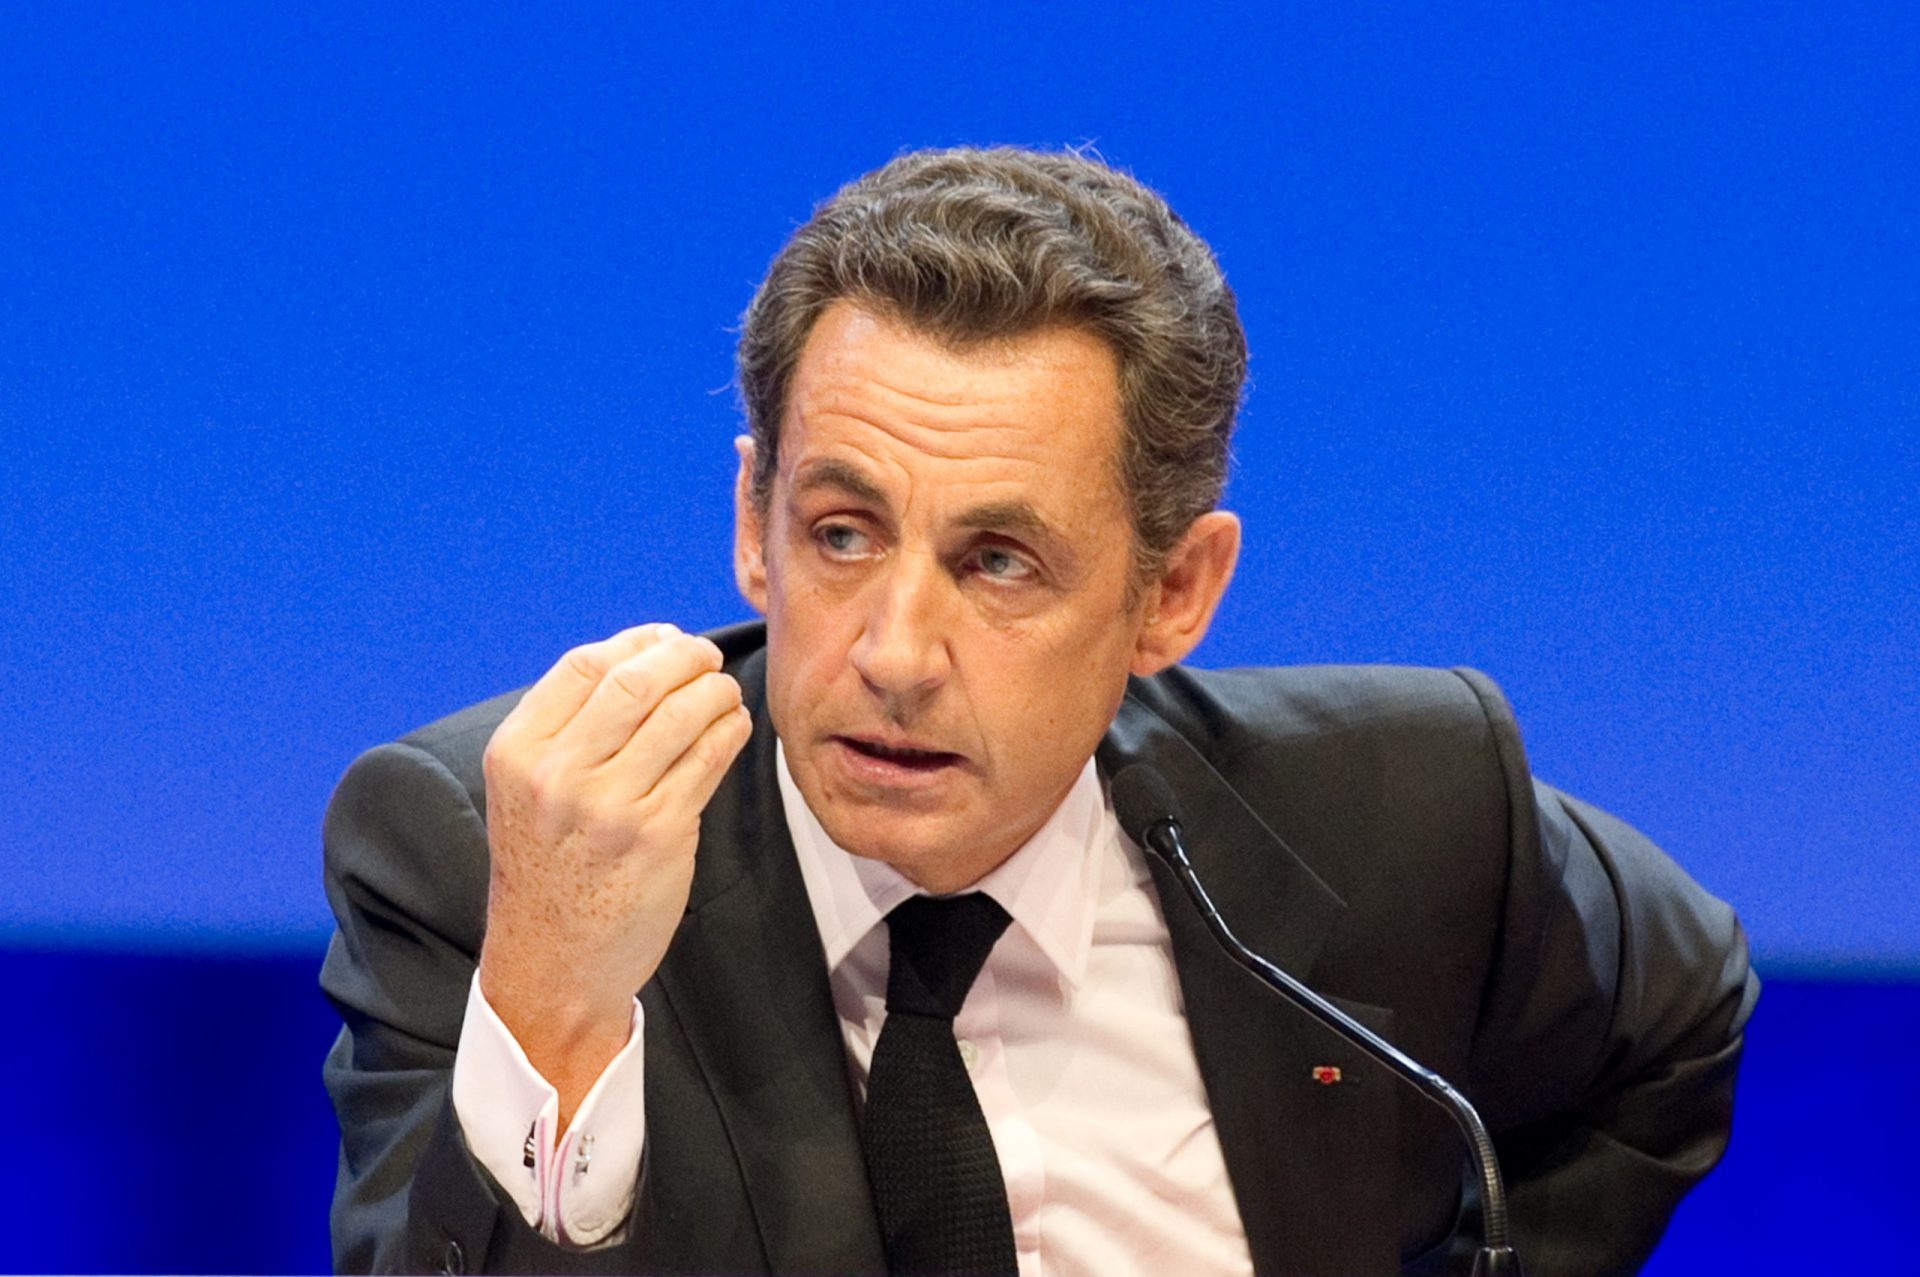 Sarkozy alvo de nova investigação